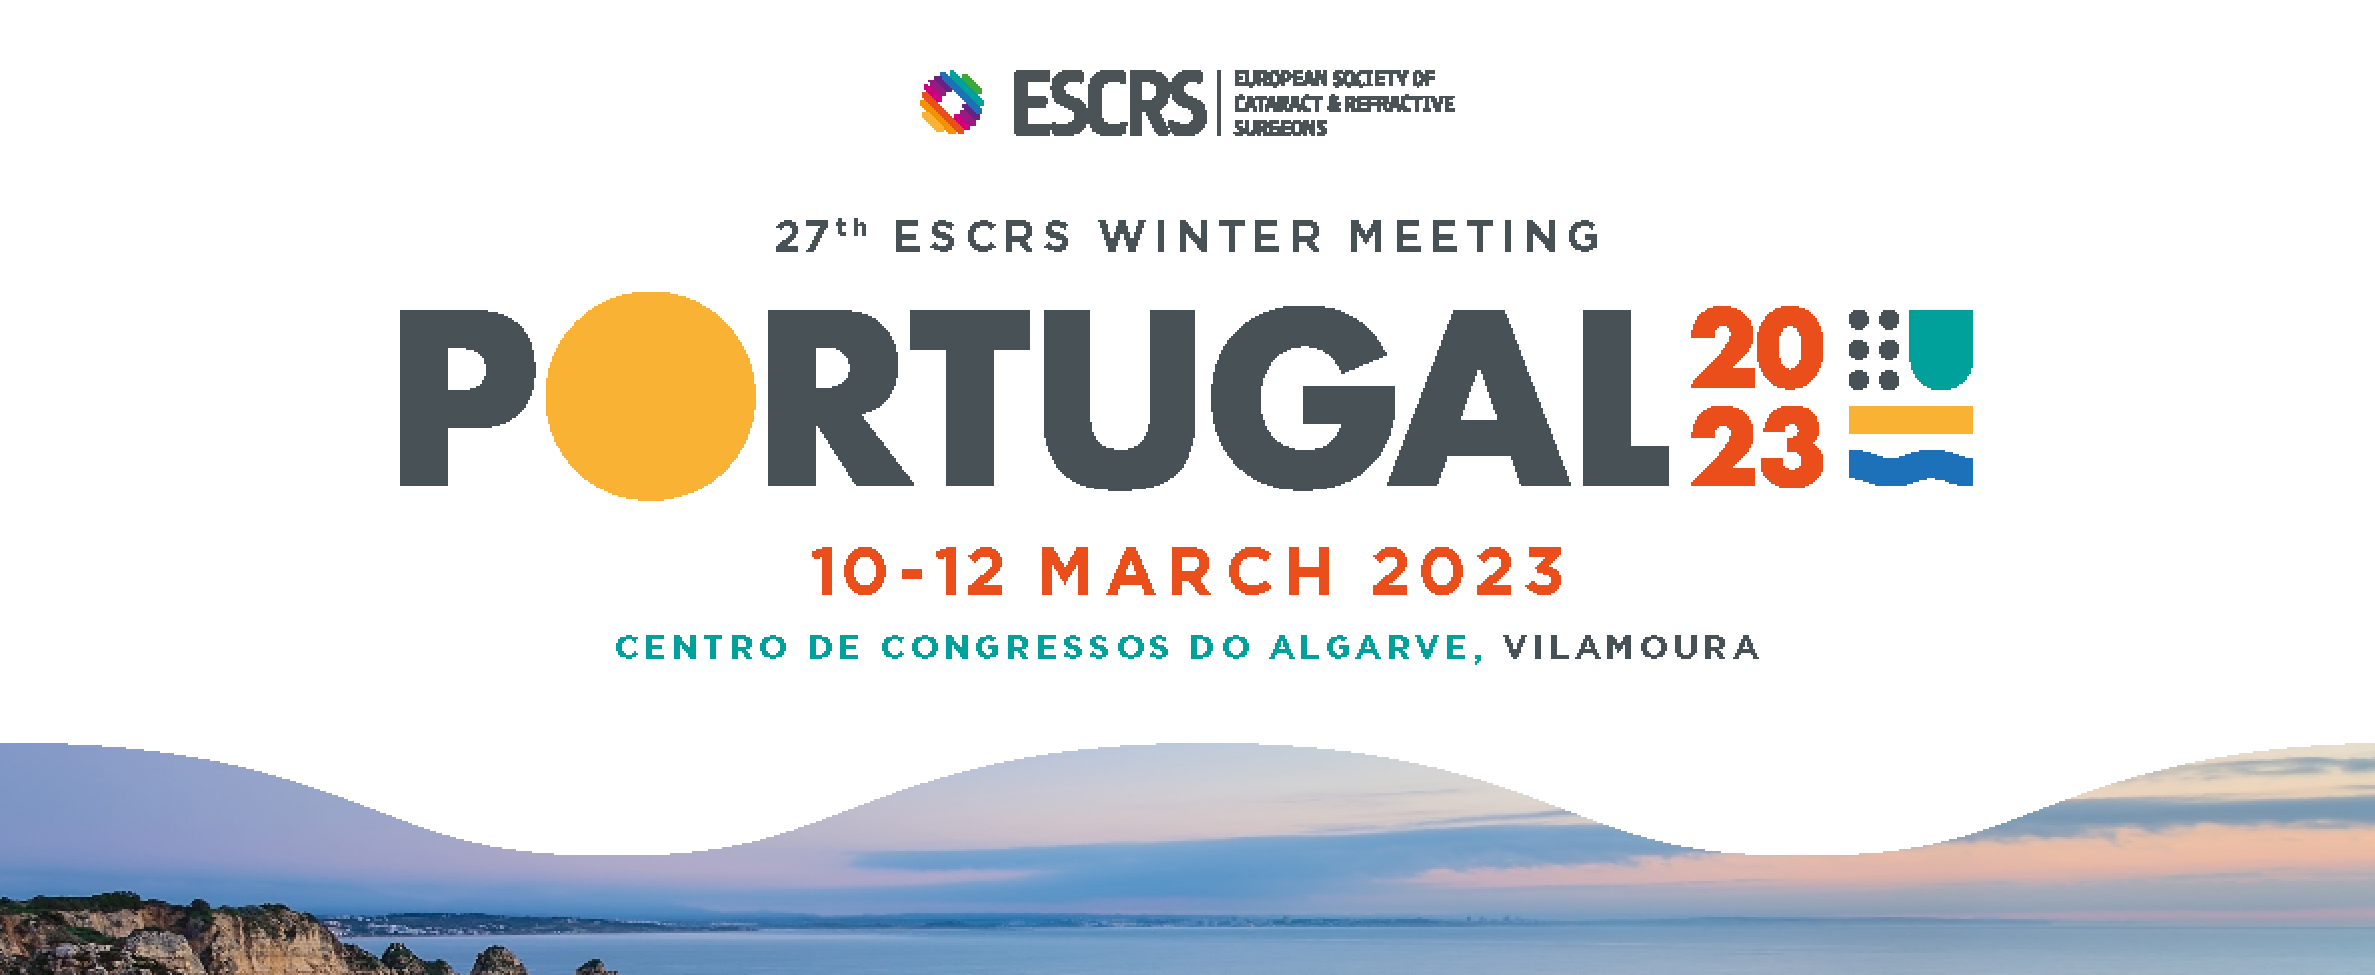 27th ESCRS Winter Meeting - ESCRS 2023